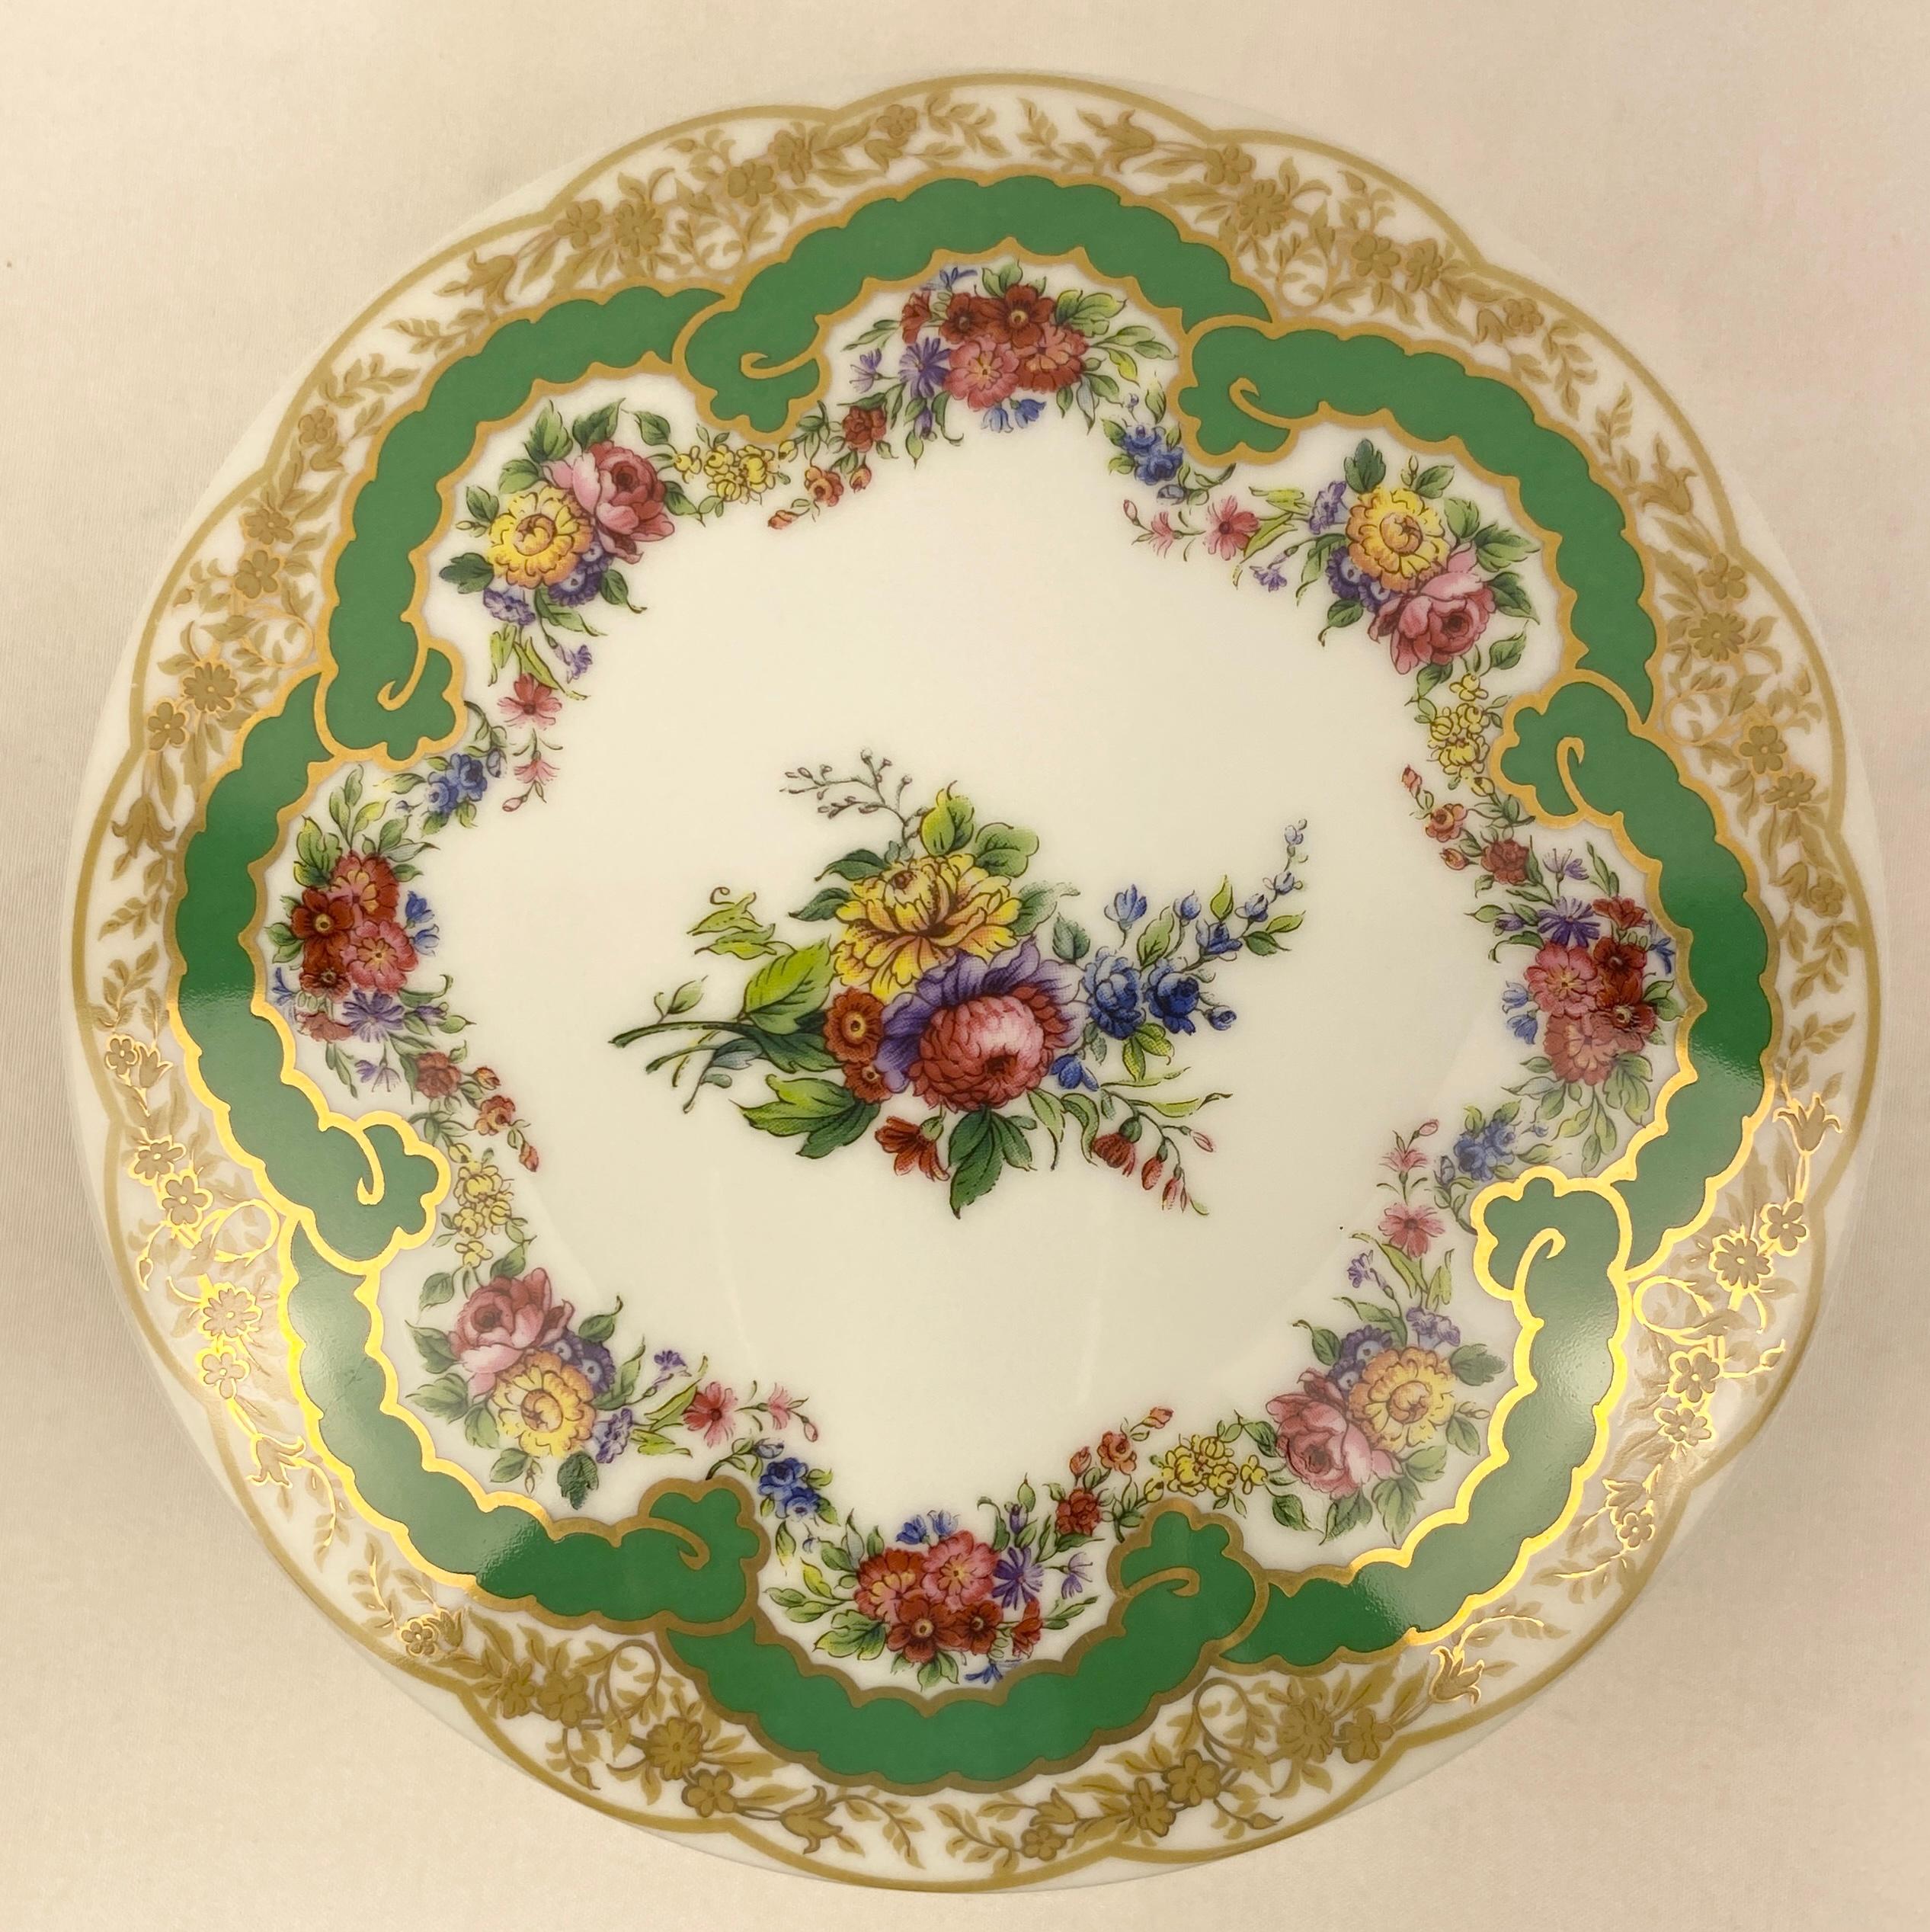 Bonbonnière ou boîte à bijoux à couvercle en porcelaine de qualité supérieure, inspirée des modèles de Sèvres du XIXe siècle.

Cette belle boîte à bonbons ou à bijoux en porcelaine est fabriquée et peinte à la main à l'aide de matériaux et d'un